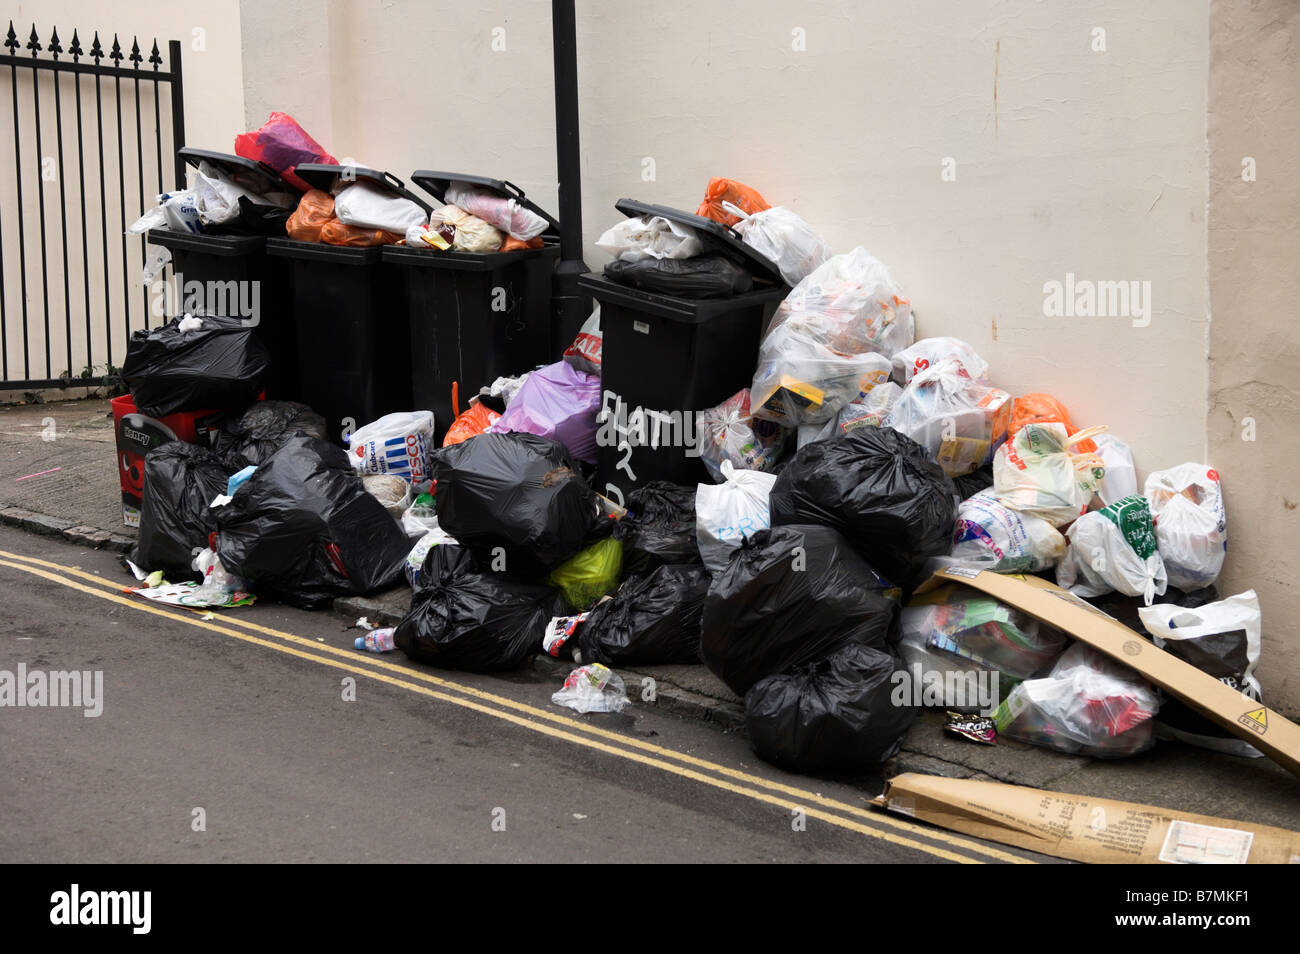 Les poubelles et sacs empilés wheelie collection d'attente sur la rue Banque D'Images